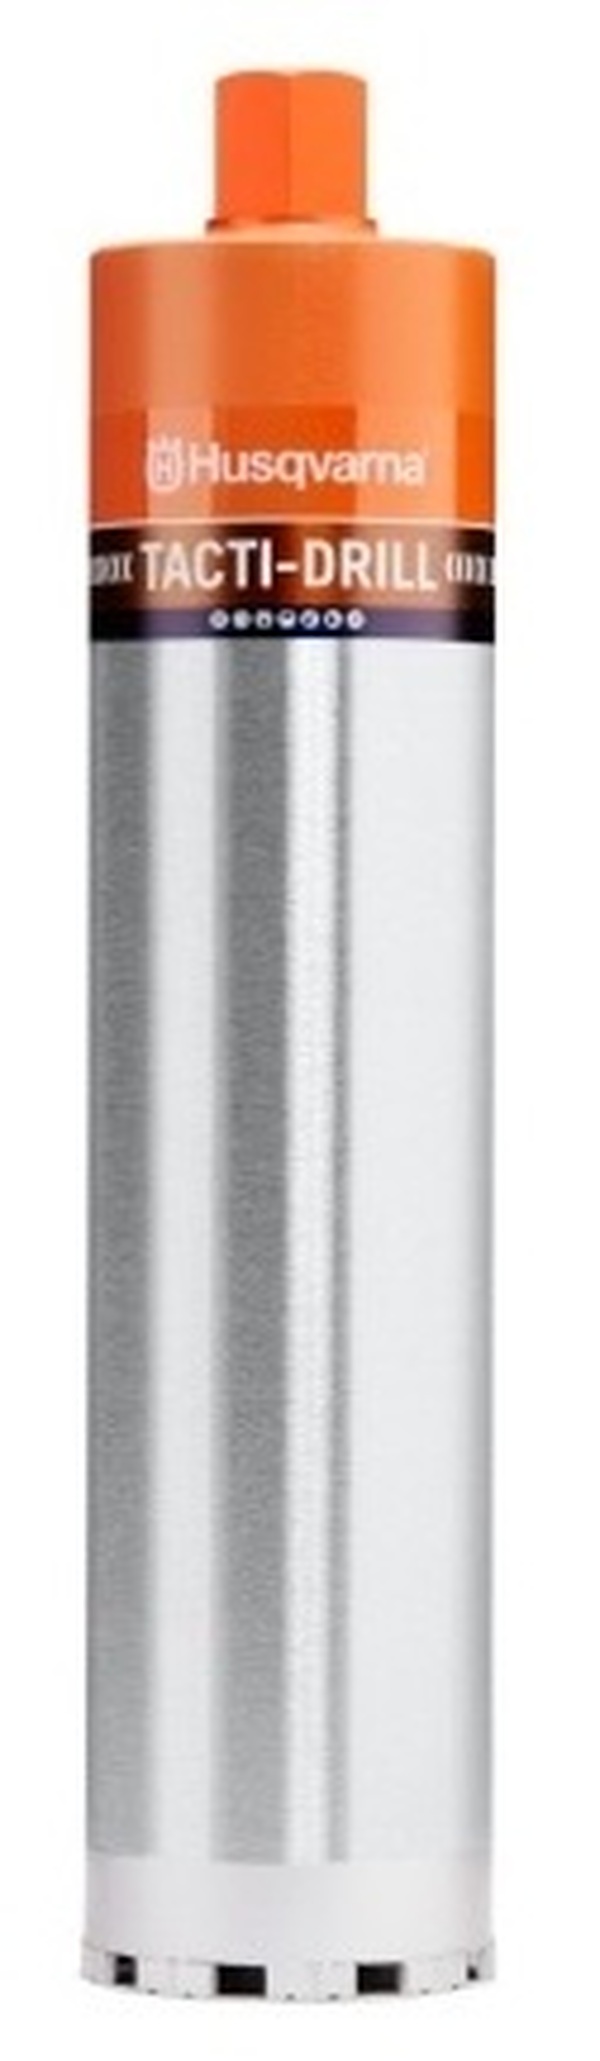 Коронка алмазная Husqvarna Tacti-Drill D20 250 11/4 5820788-01